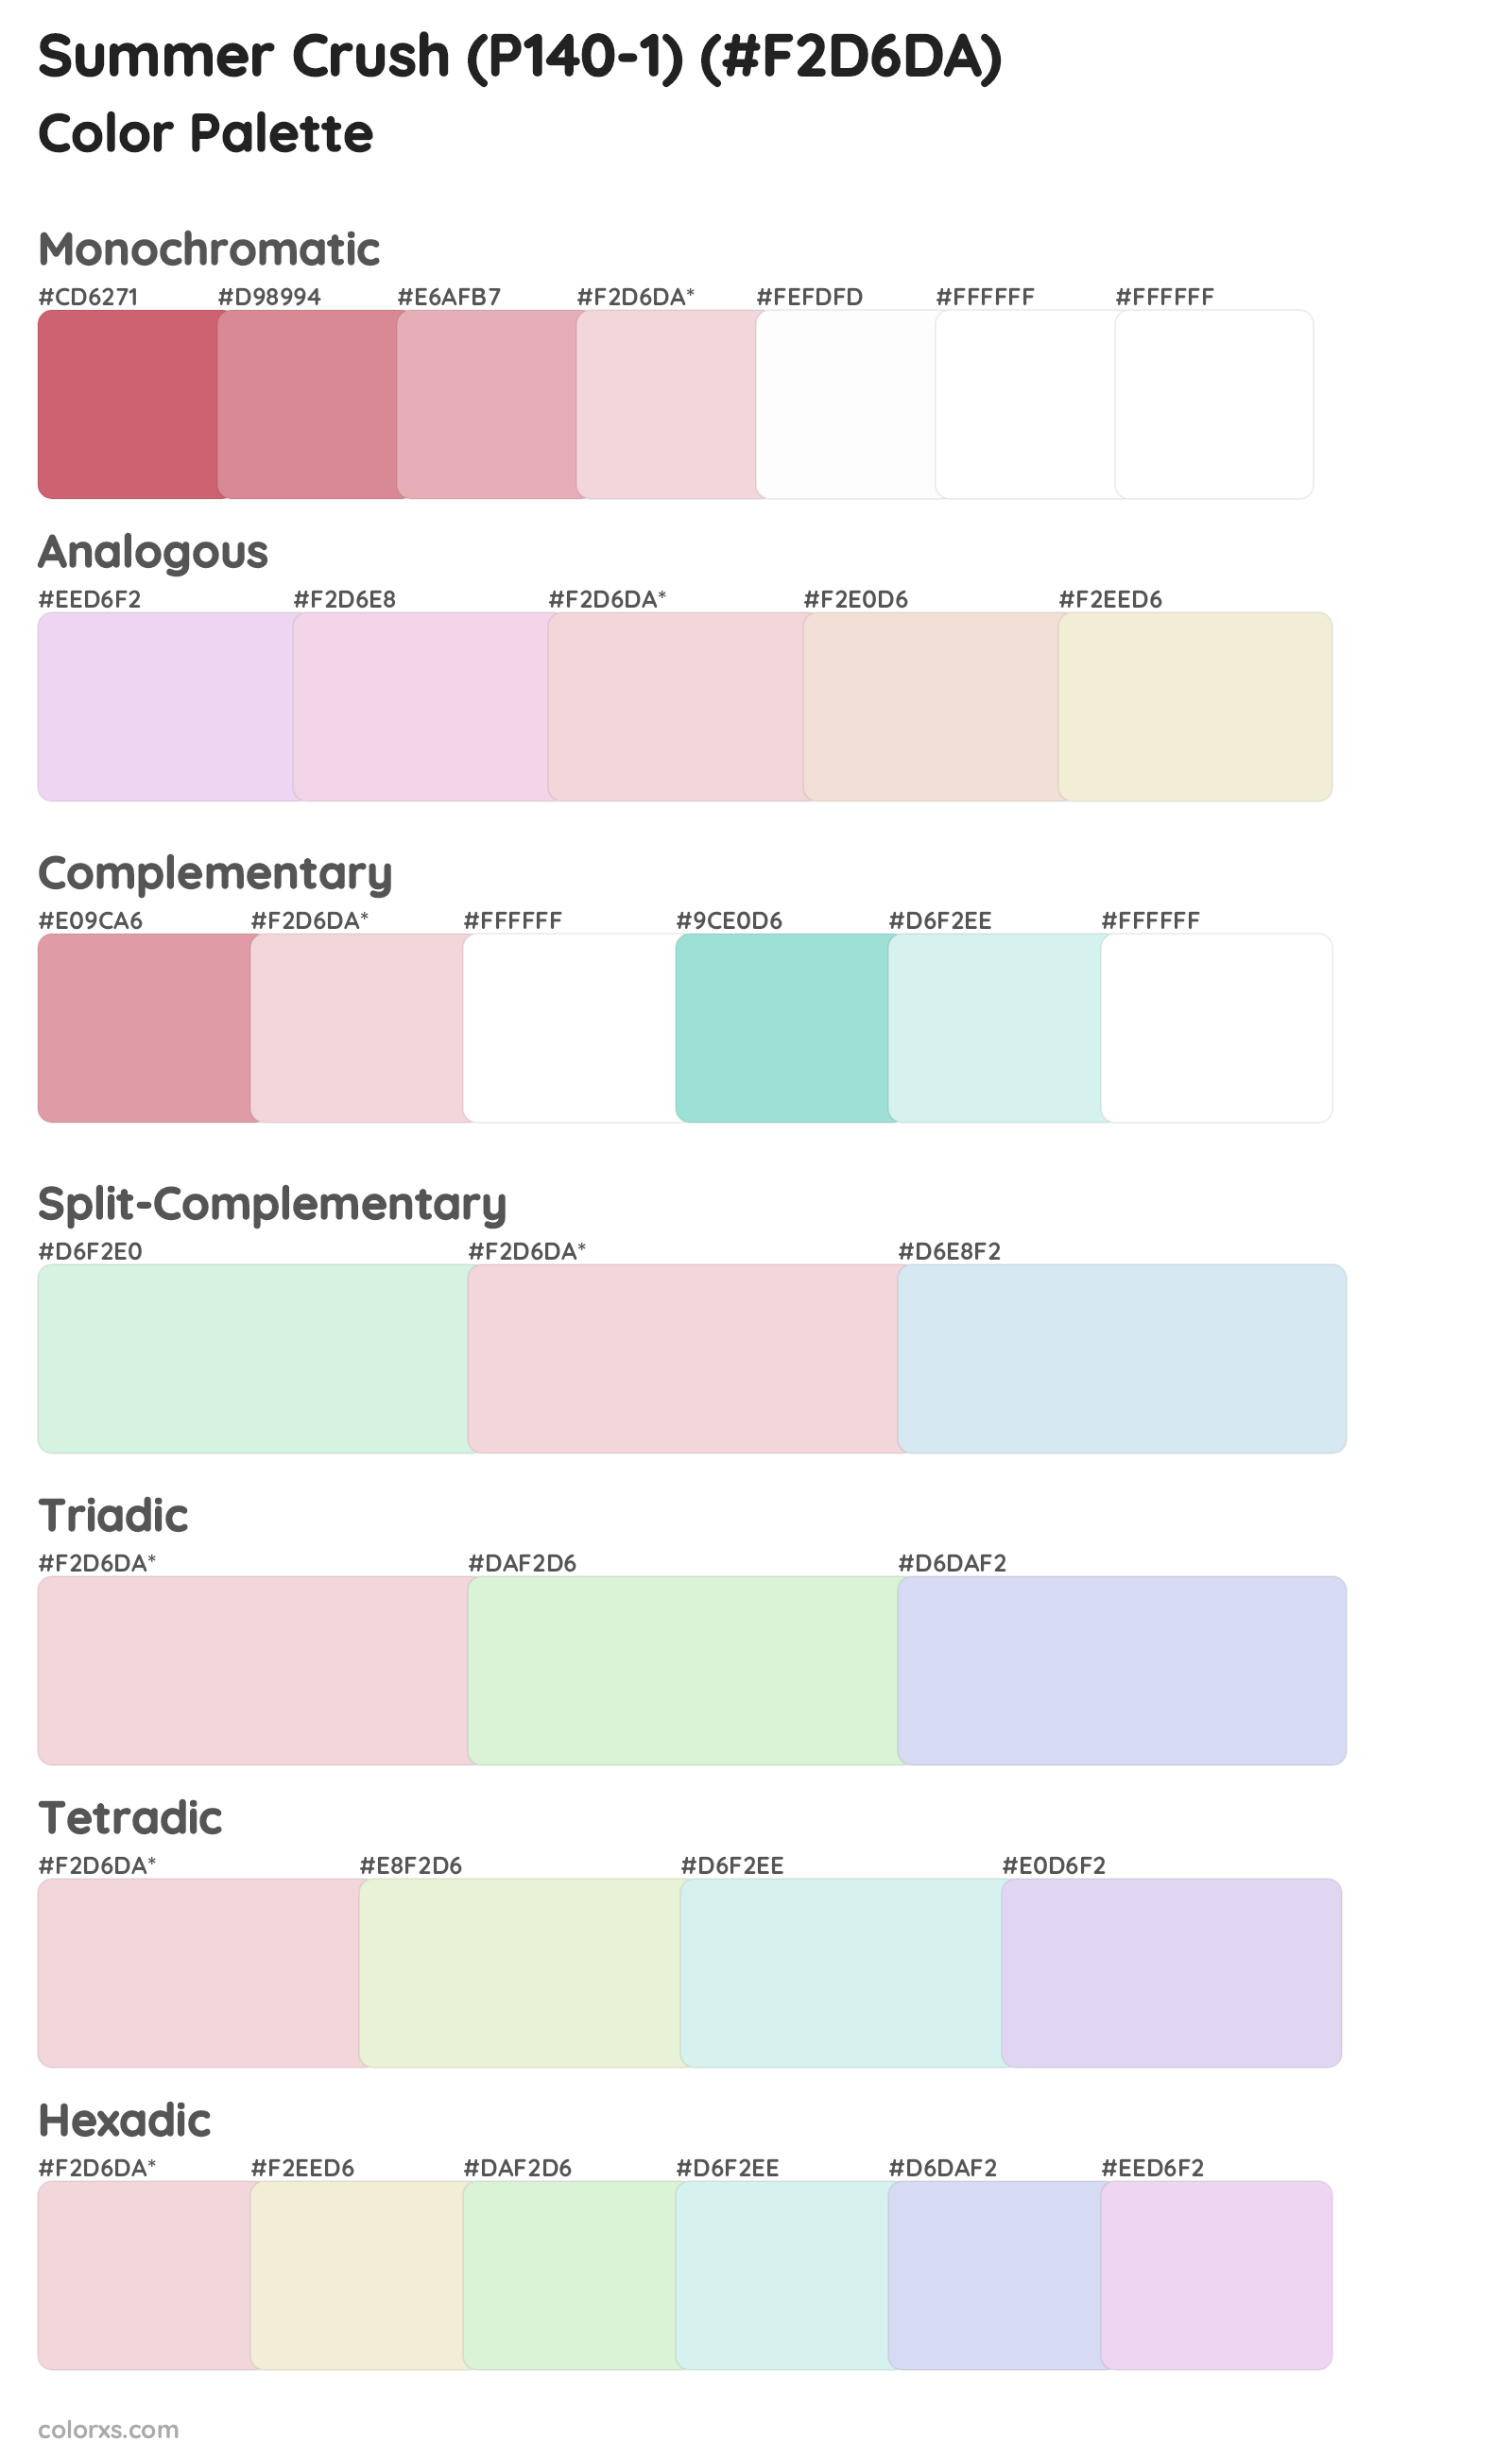 Summer Crush (P140-1) Color Scheme Palettes